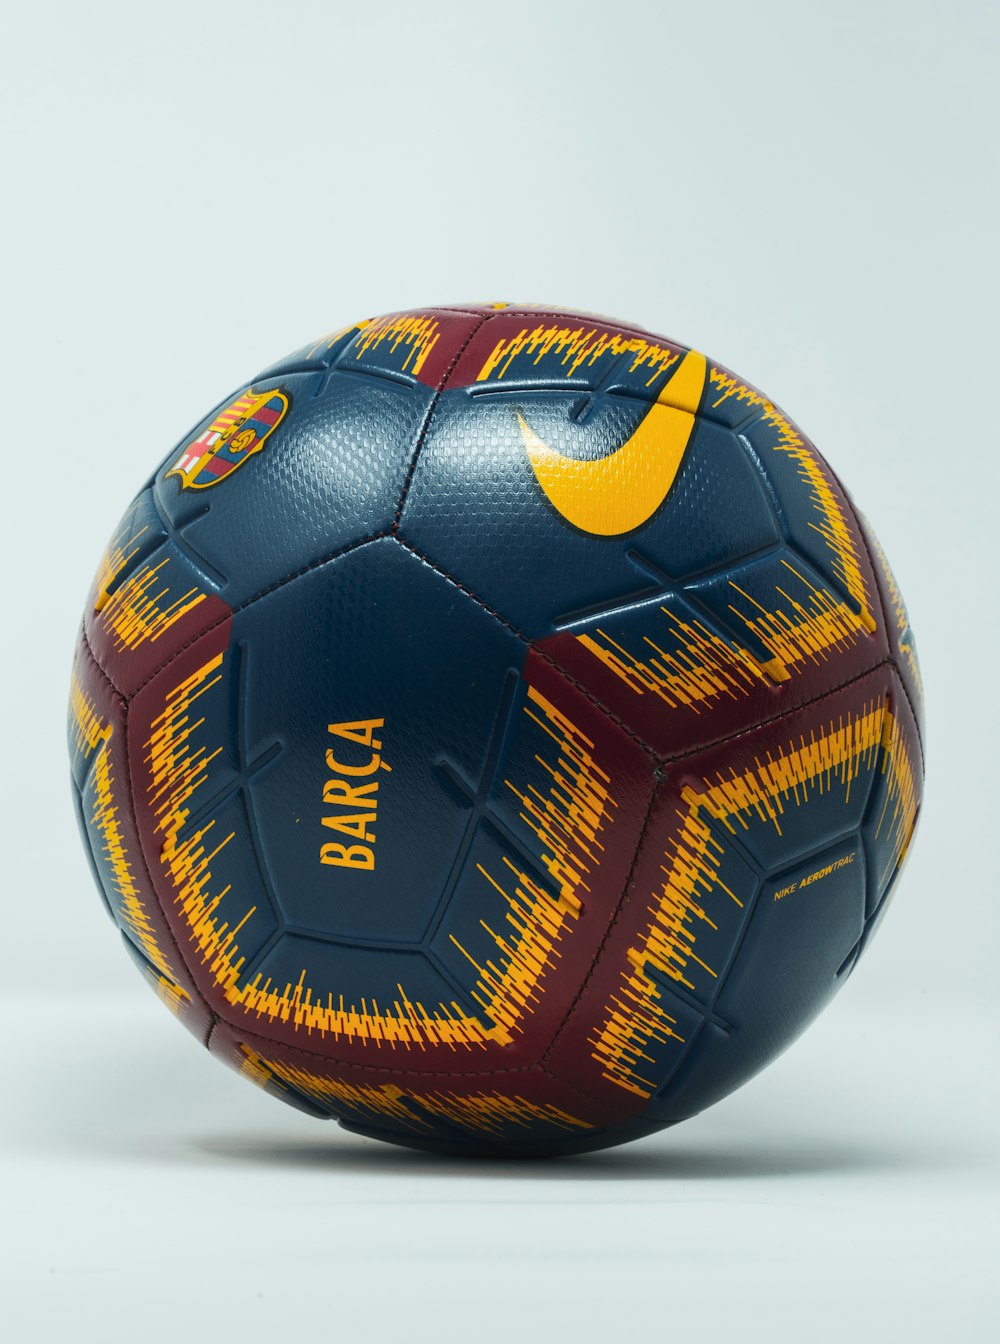 bola de futebol Nike azul, marrom e amarela